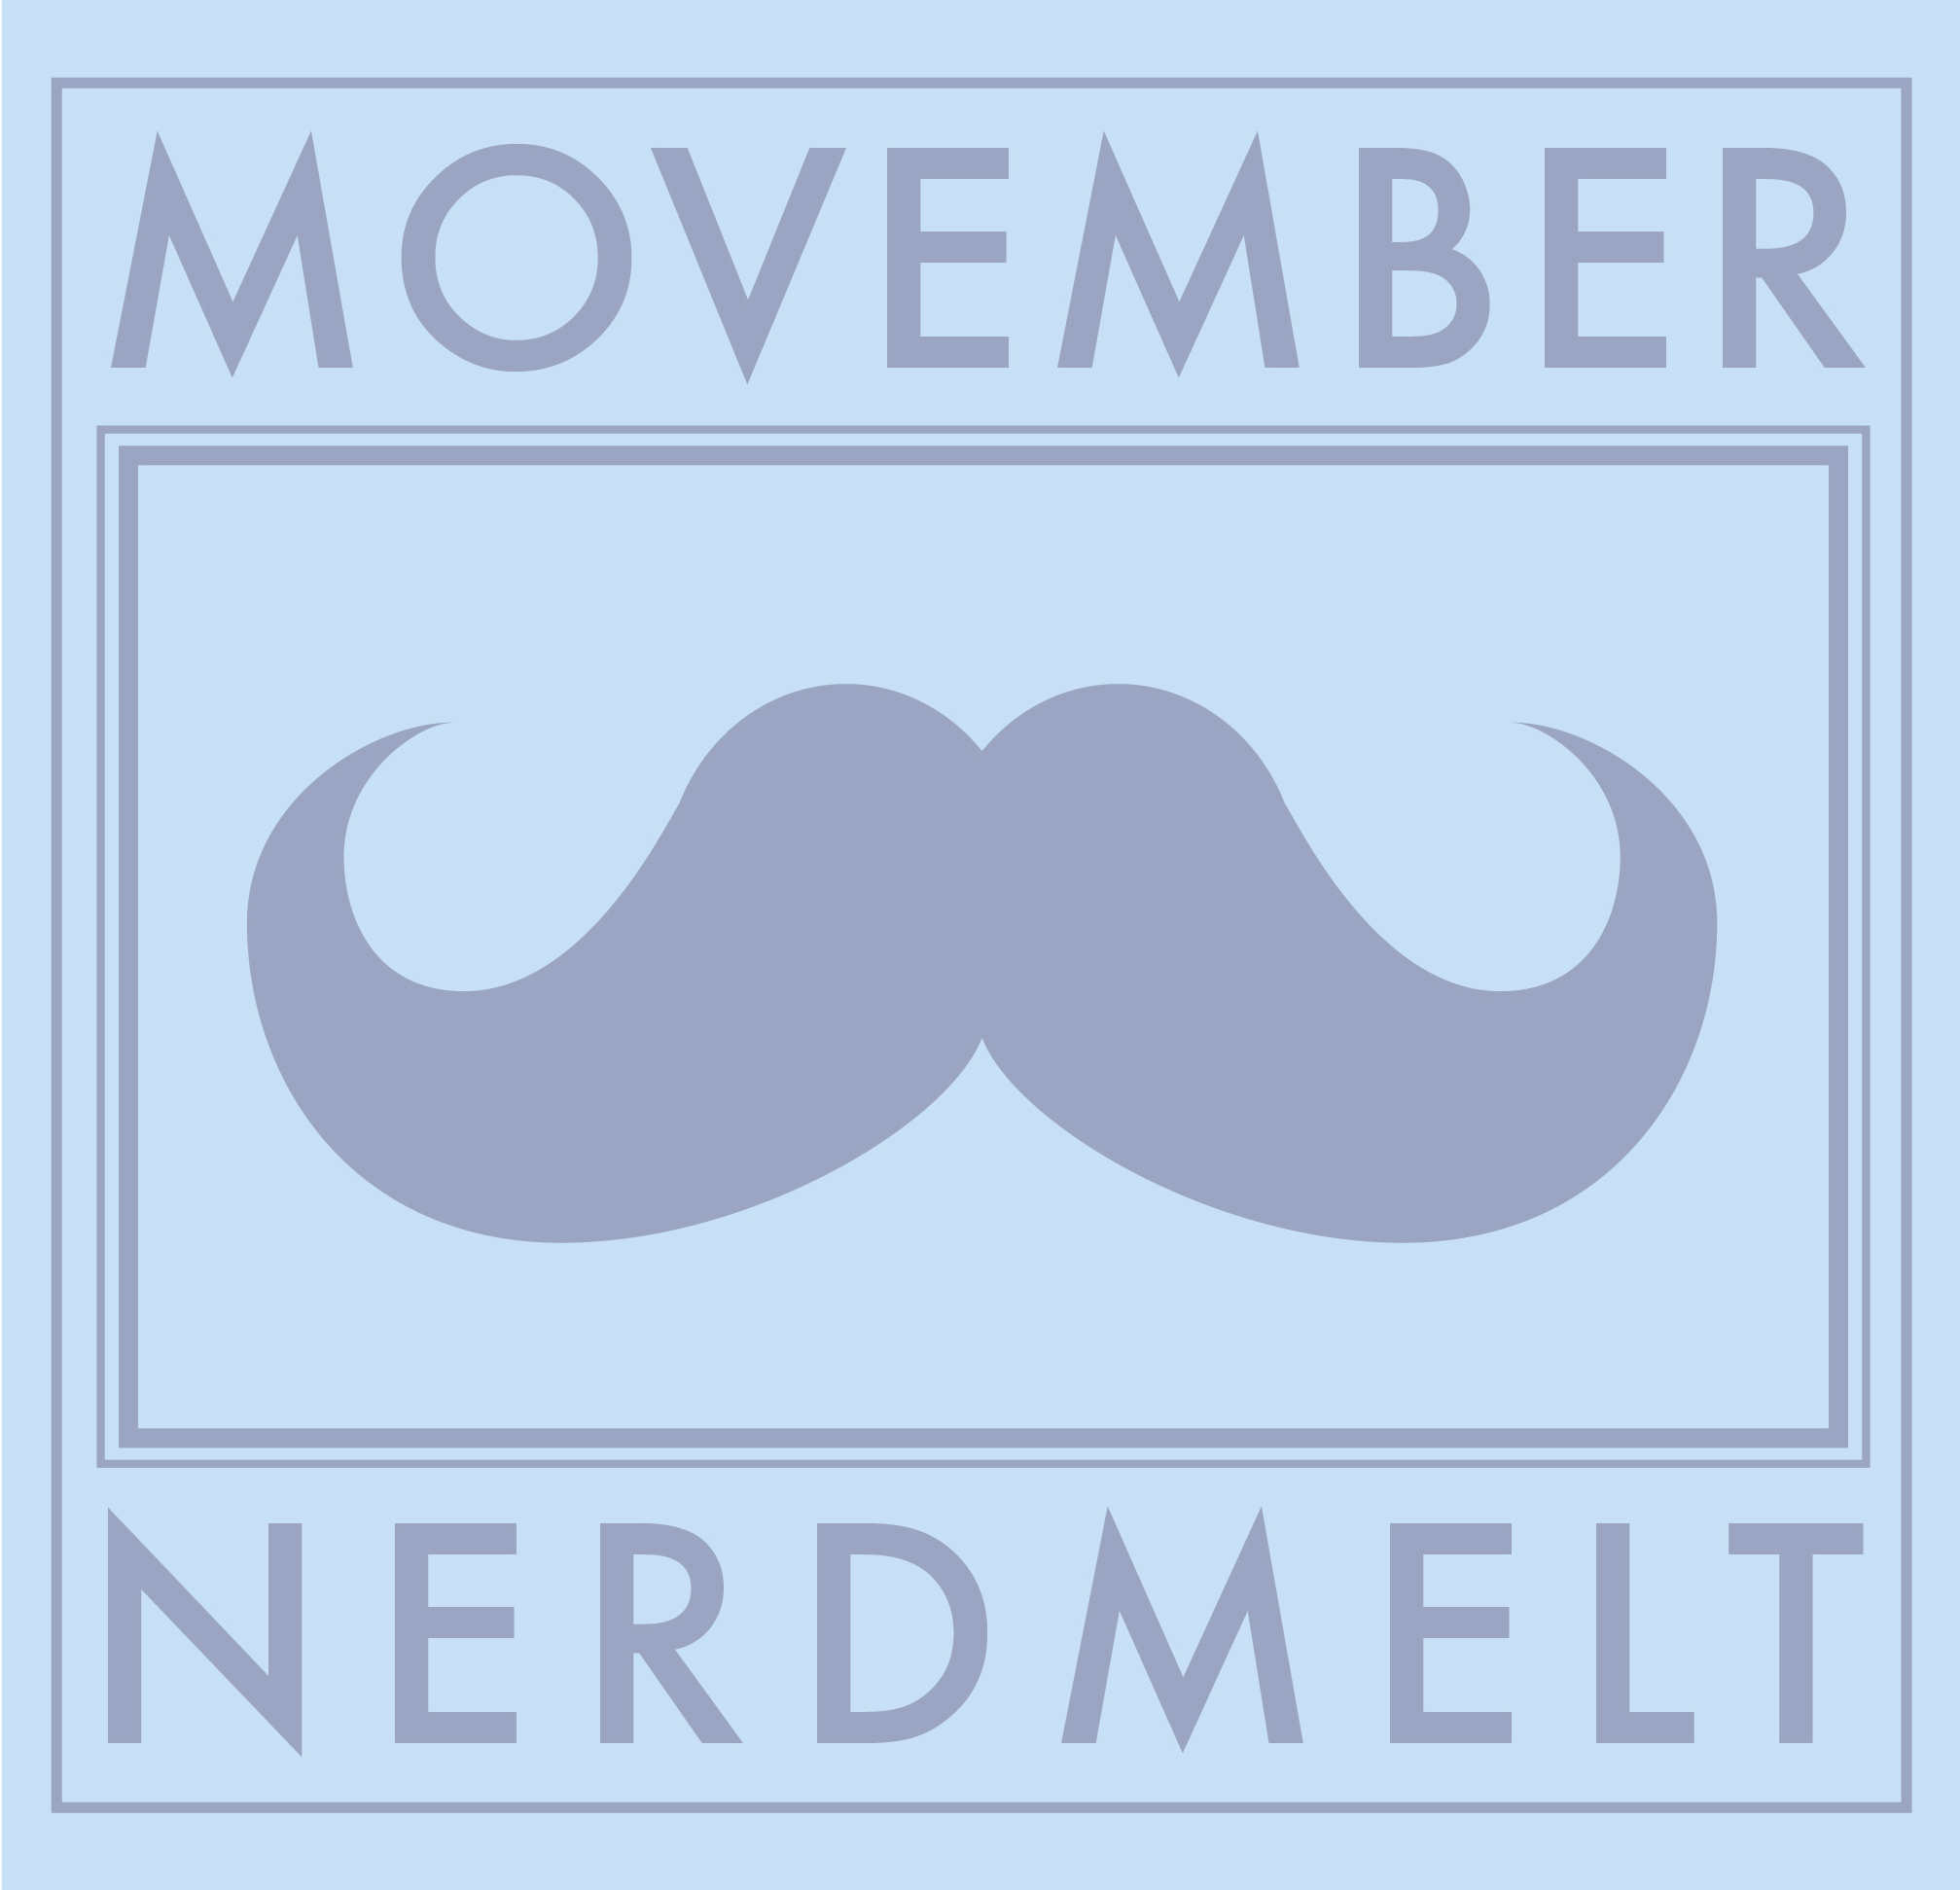 Movember Nerdmelt